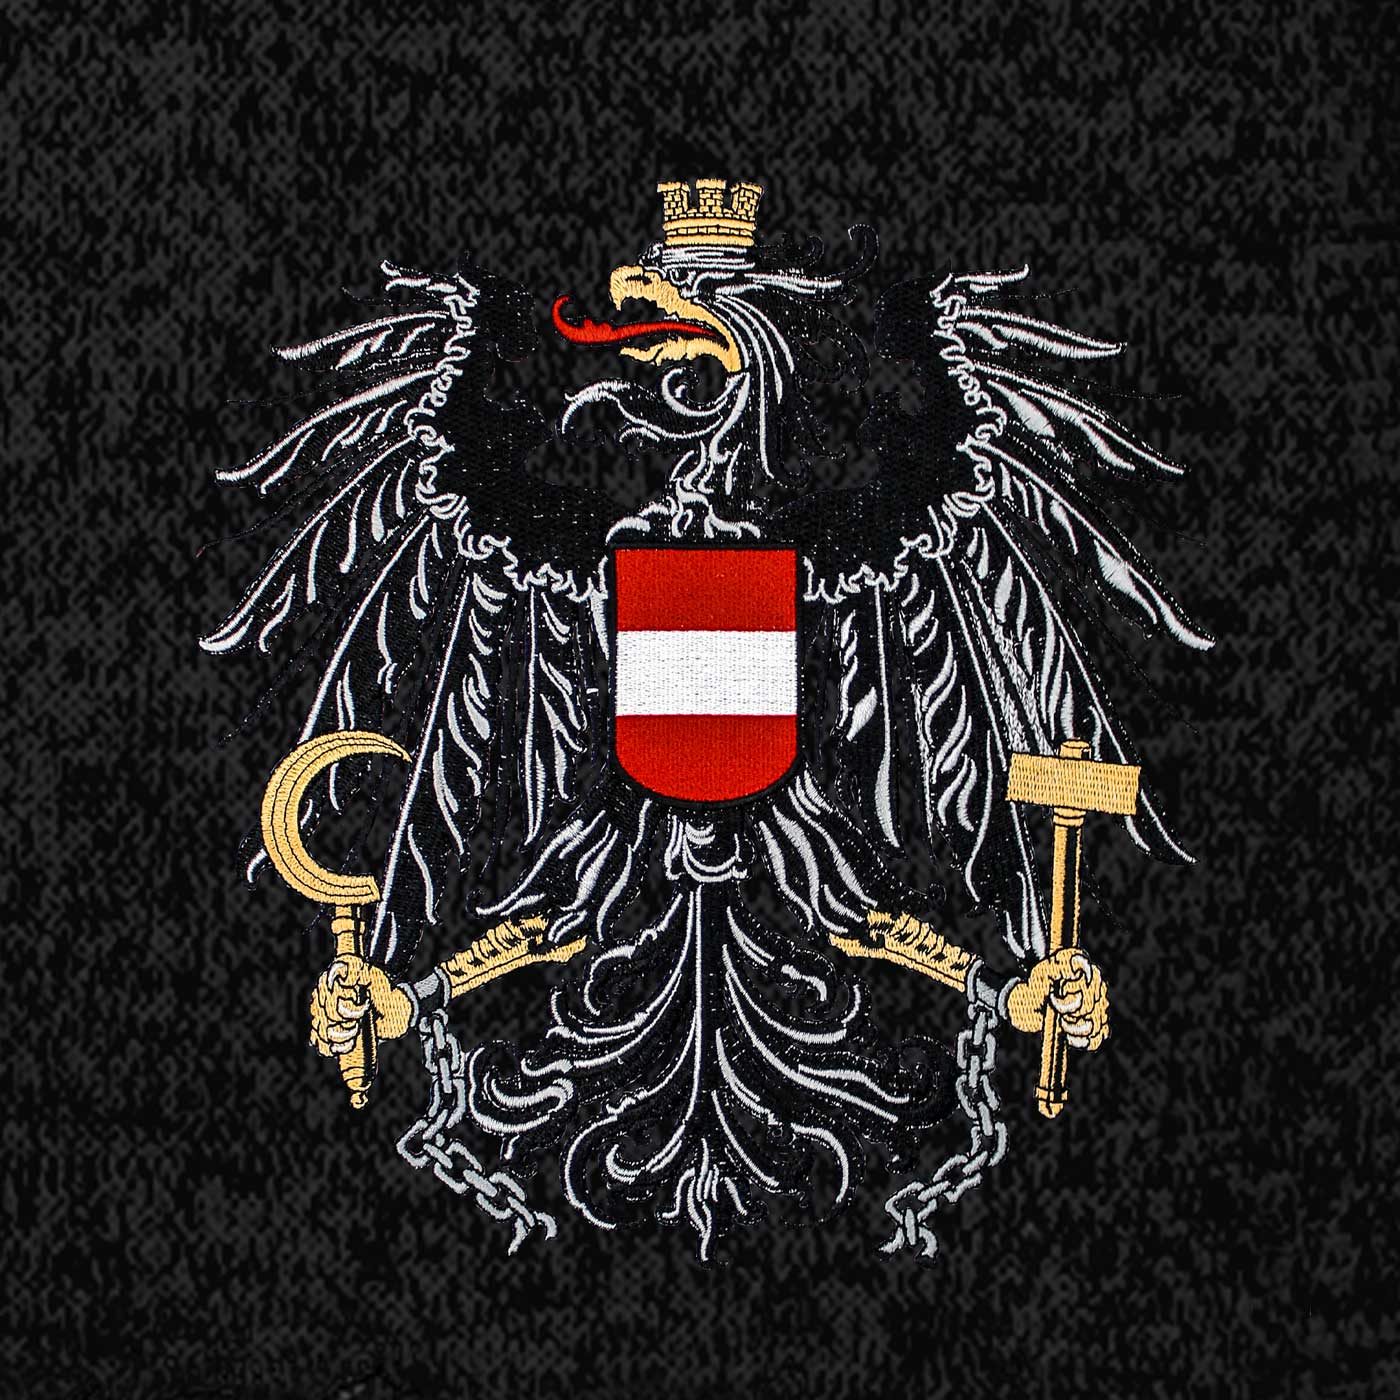 Österreich Kultjacke ohne Kapuze - Das Original